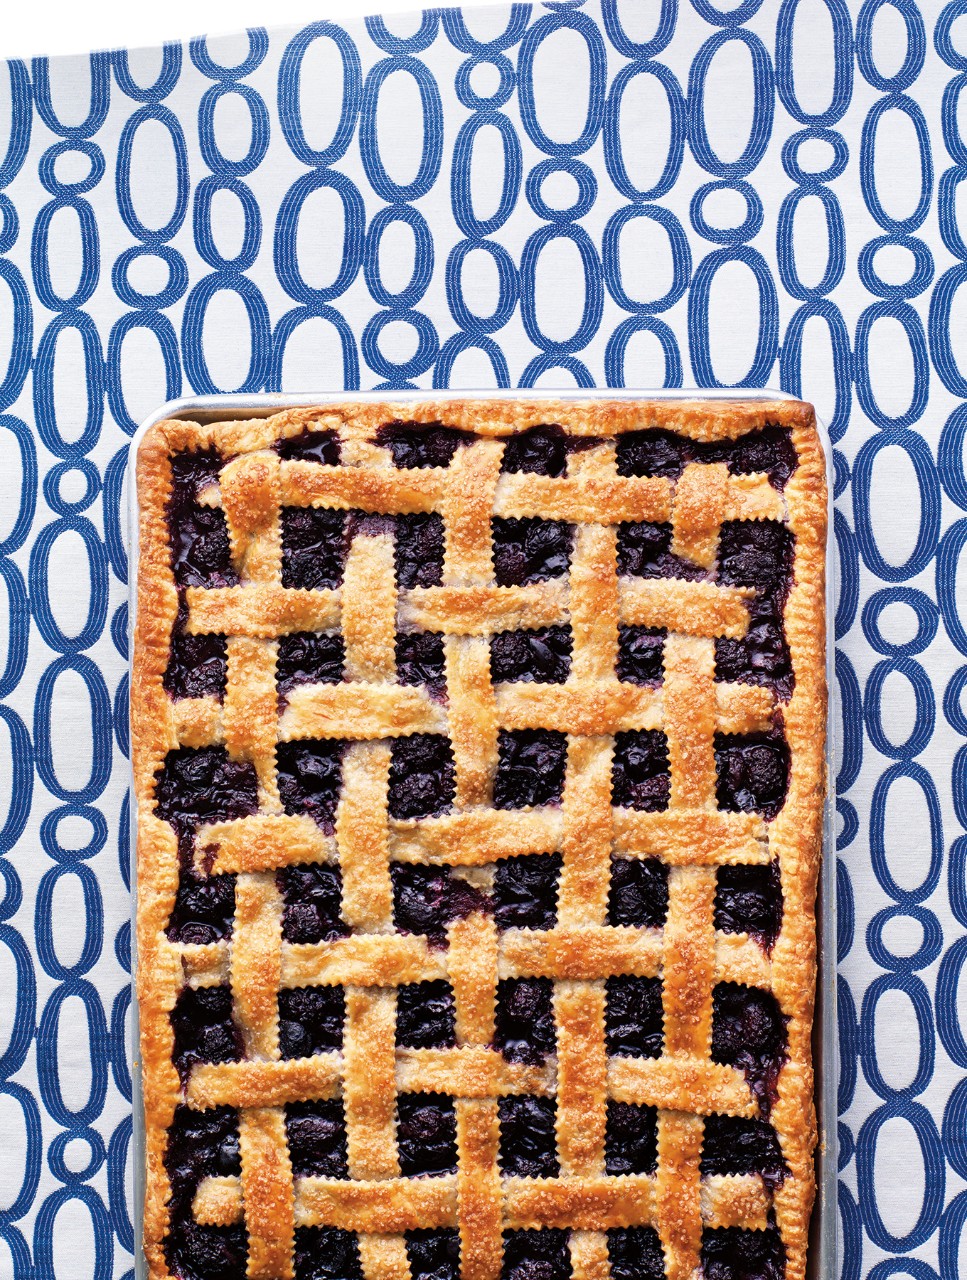 Sweet Cherry & Blackberry Lattice Pie